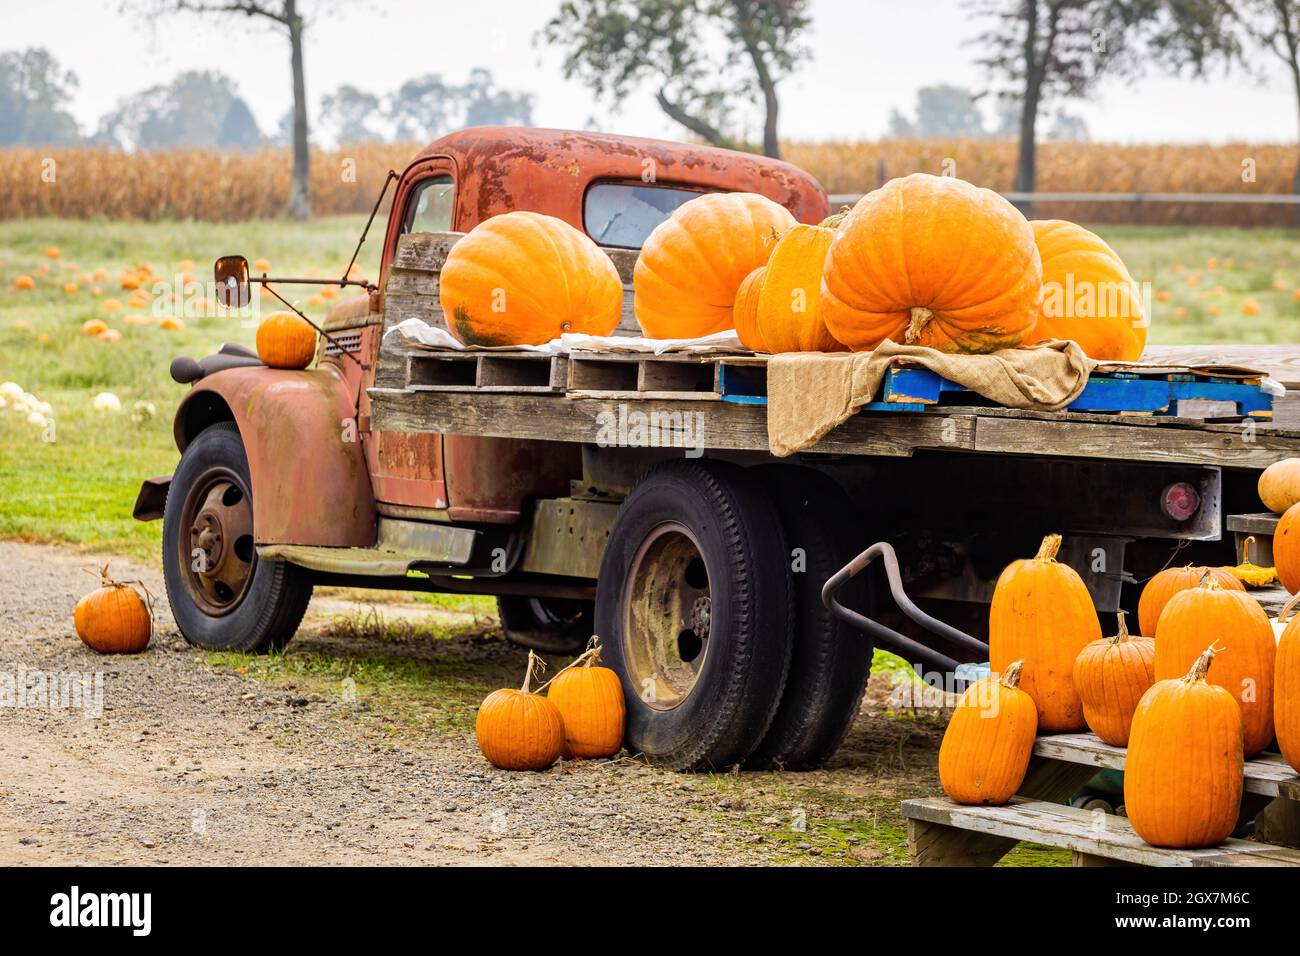 Harvest Indoor or Outdoor Truck Carrying Farm Fresh Pumpkins